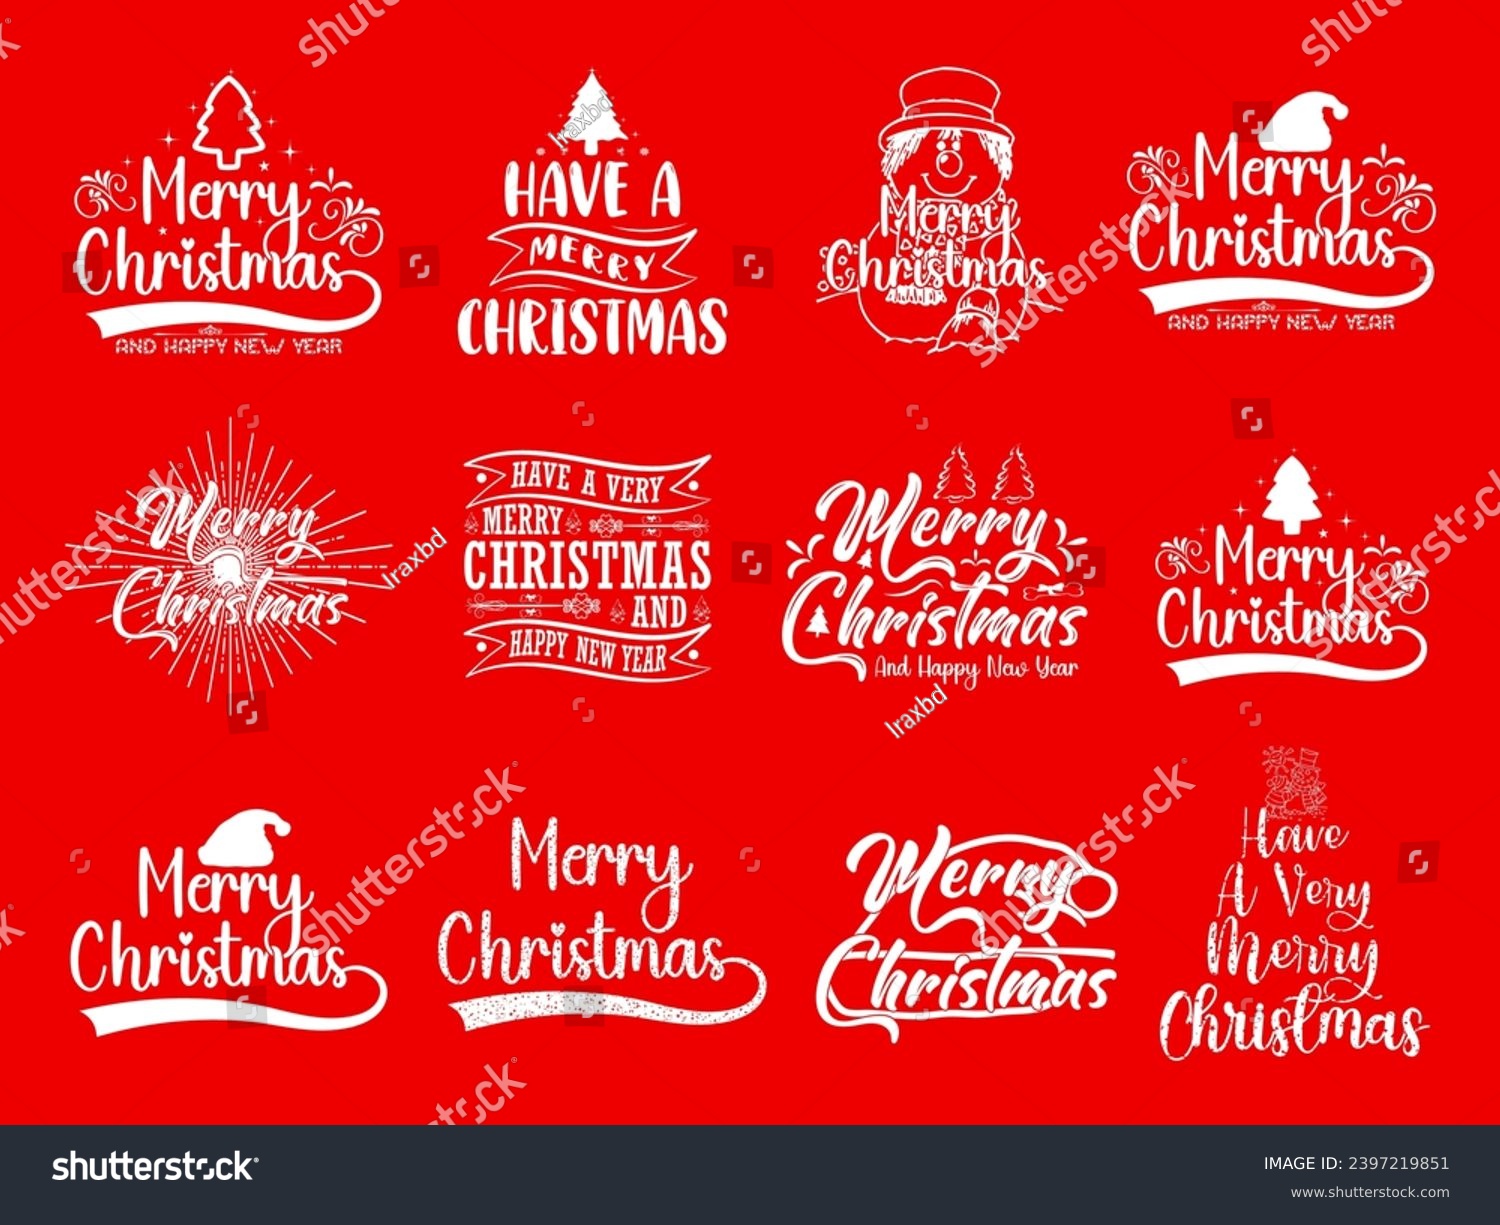 SVG of Christmas t shirt design bundle, Christmas bundle, Christmas calligraphy quotes collection, Happy new year, New year quotes, Christmas tshirt for family, svg